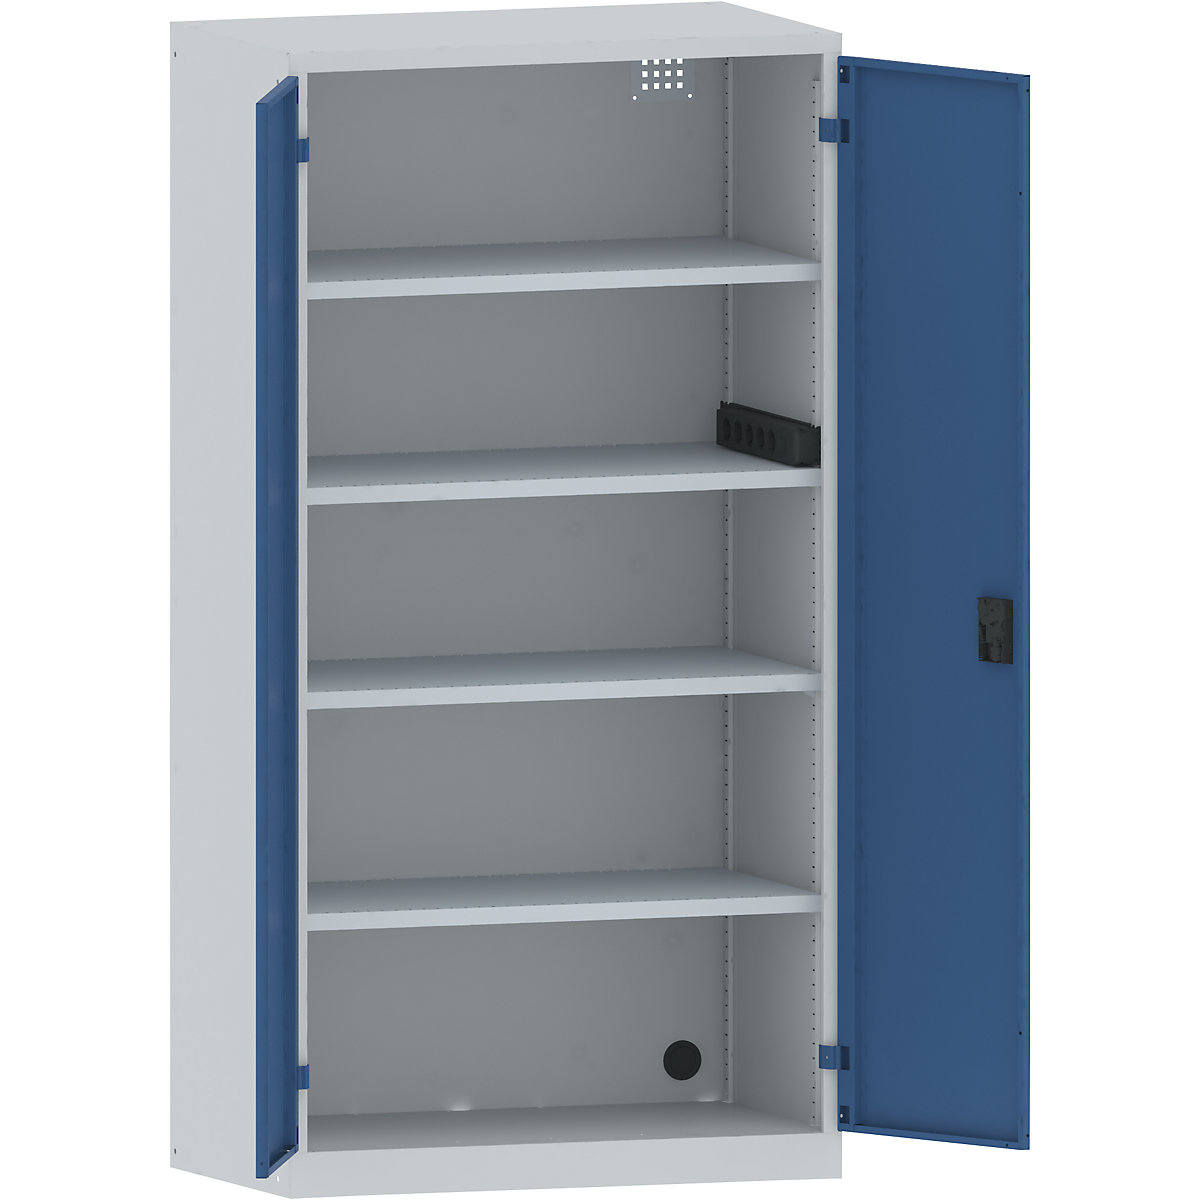 LISTA – Skříň pro nabíjení akumulátorů, 4 police, plné plechové dveře, boční zásuvková lišta, šedá / modrá